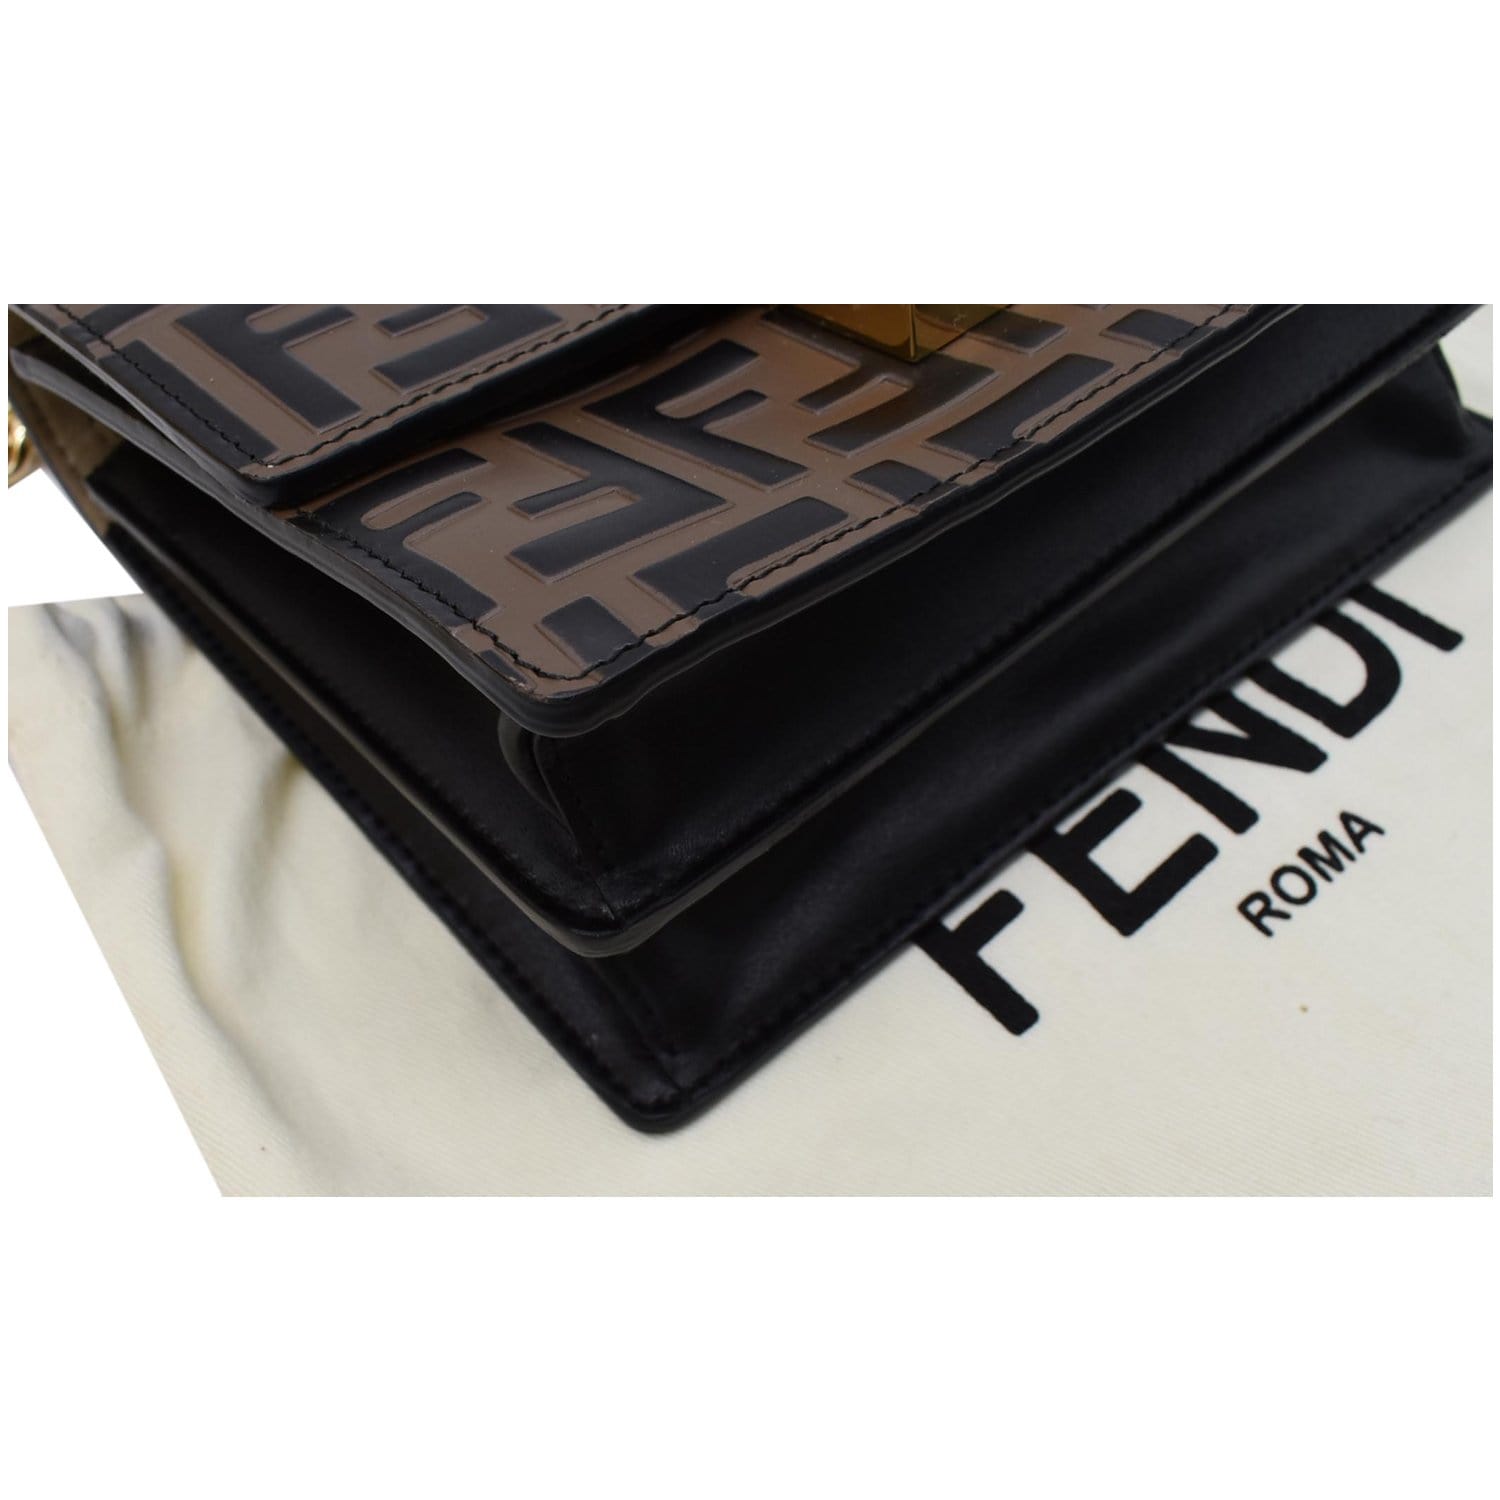 Fendi Kan U Small Brown leather mini-bag - Pop Style (Pty) Ltd